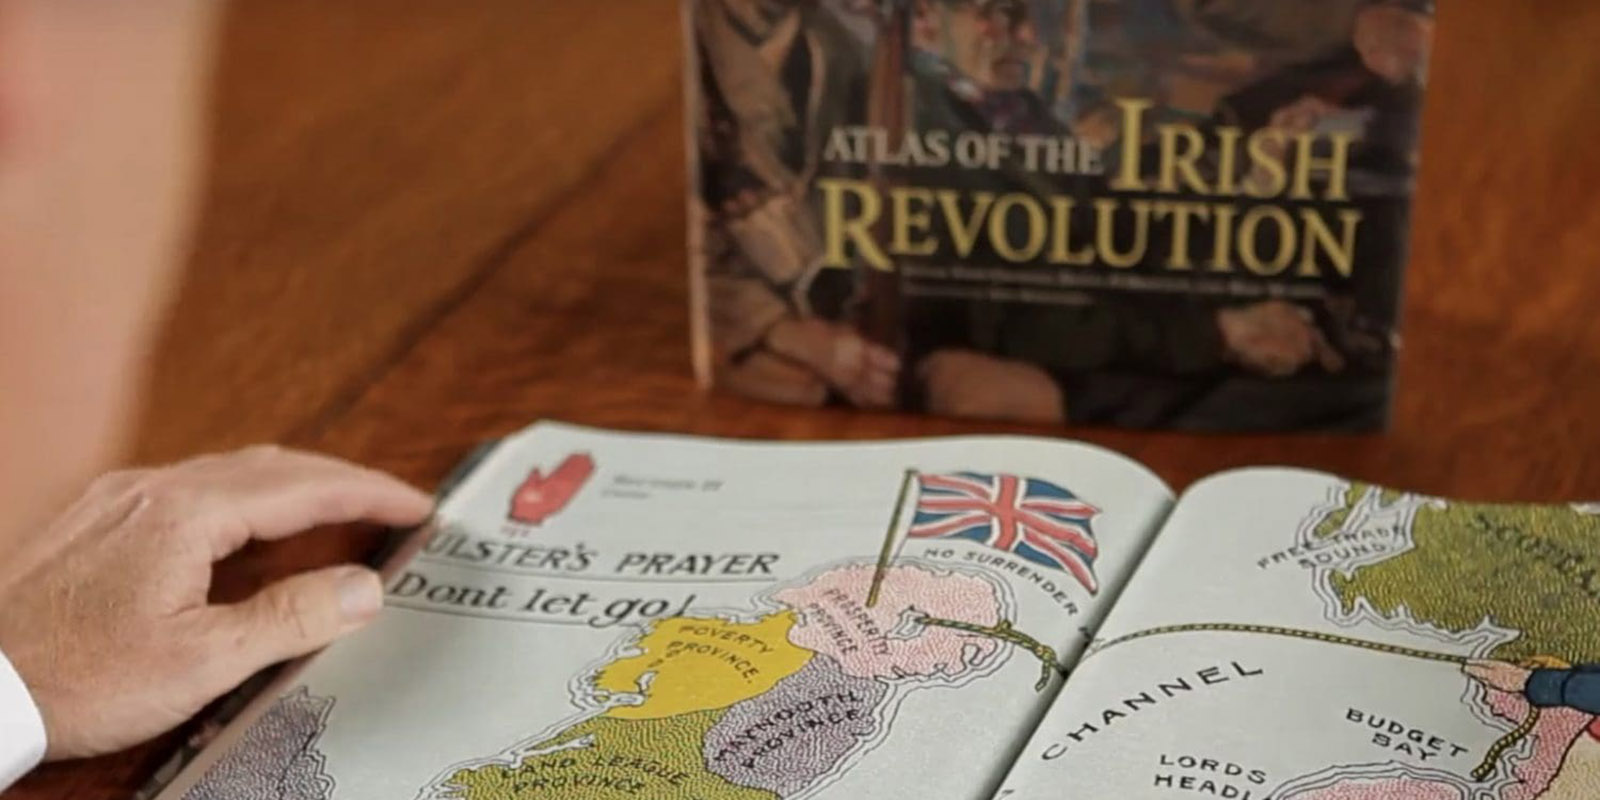 Acmhainní teagaisc an Atlas of the Irish Revolution le cur ar fáil i nGaeilge